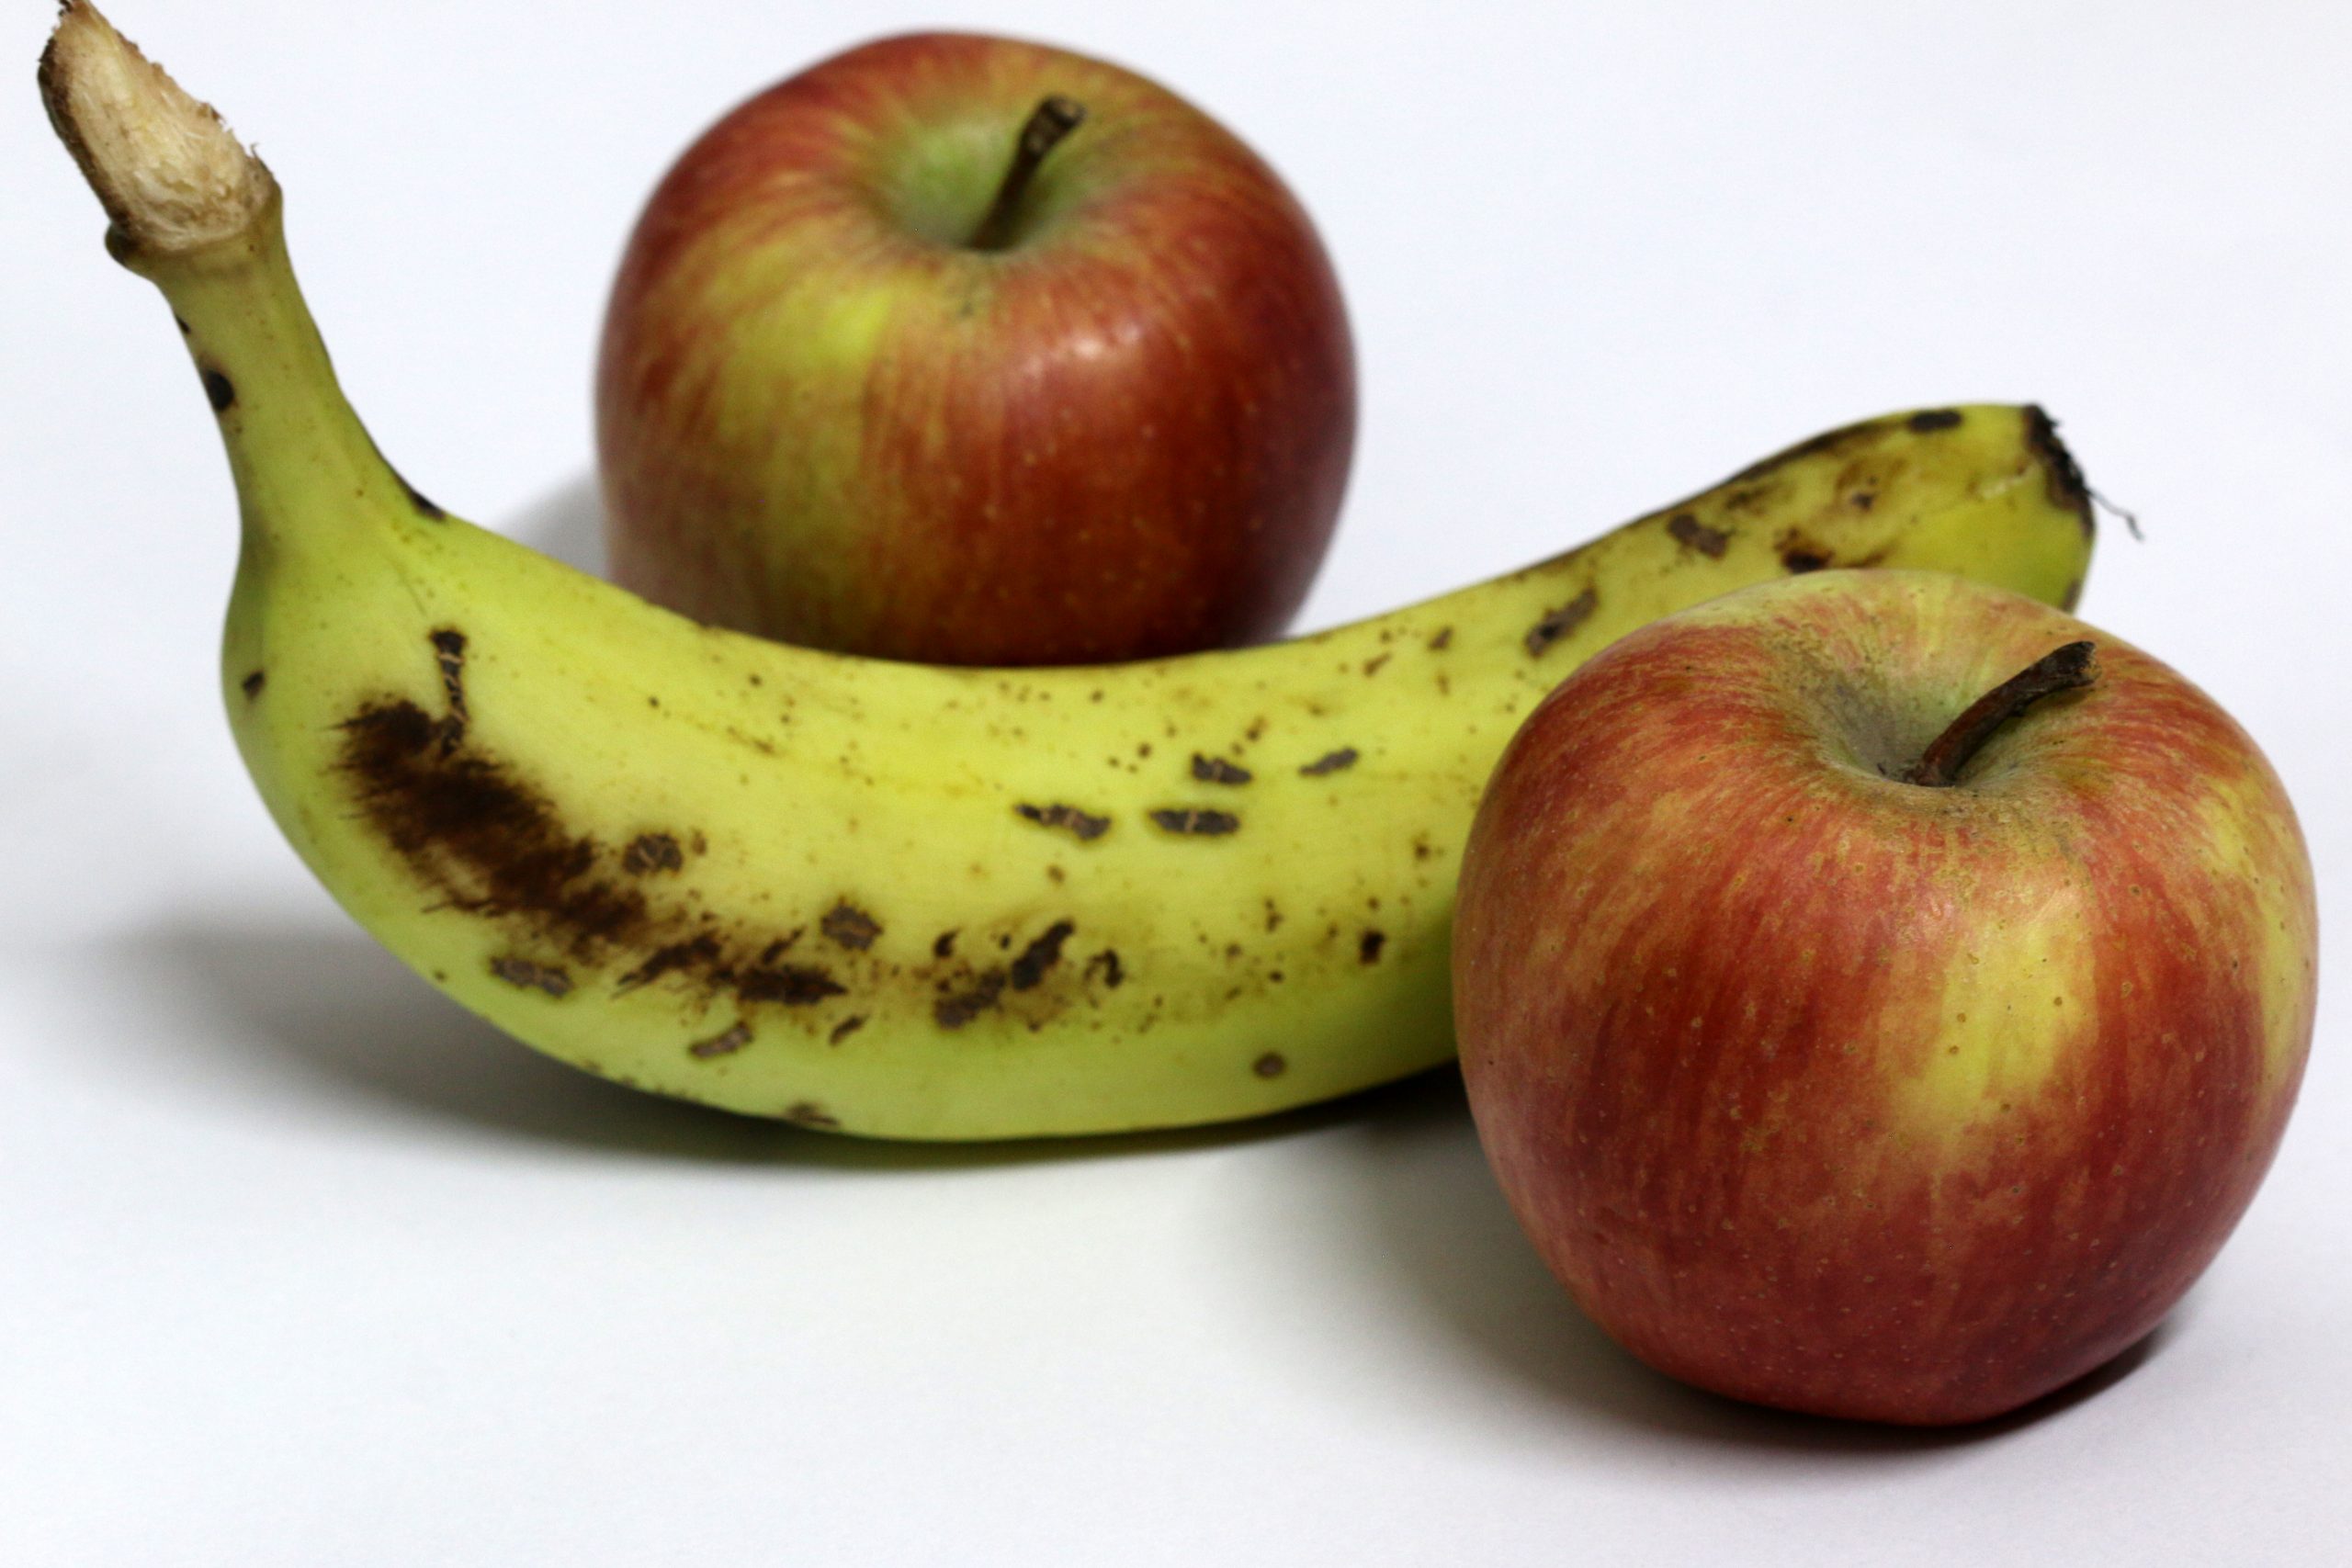 Apple and Banana